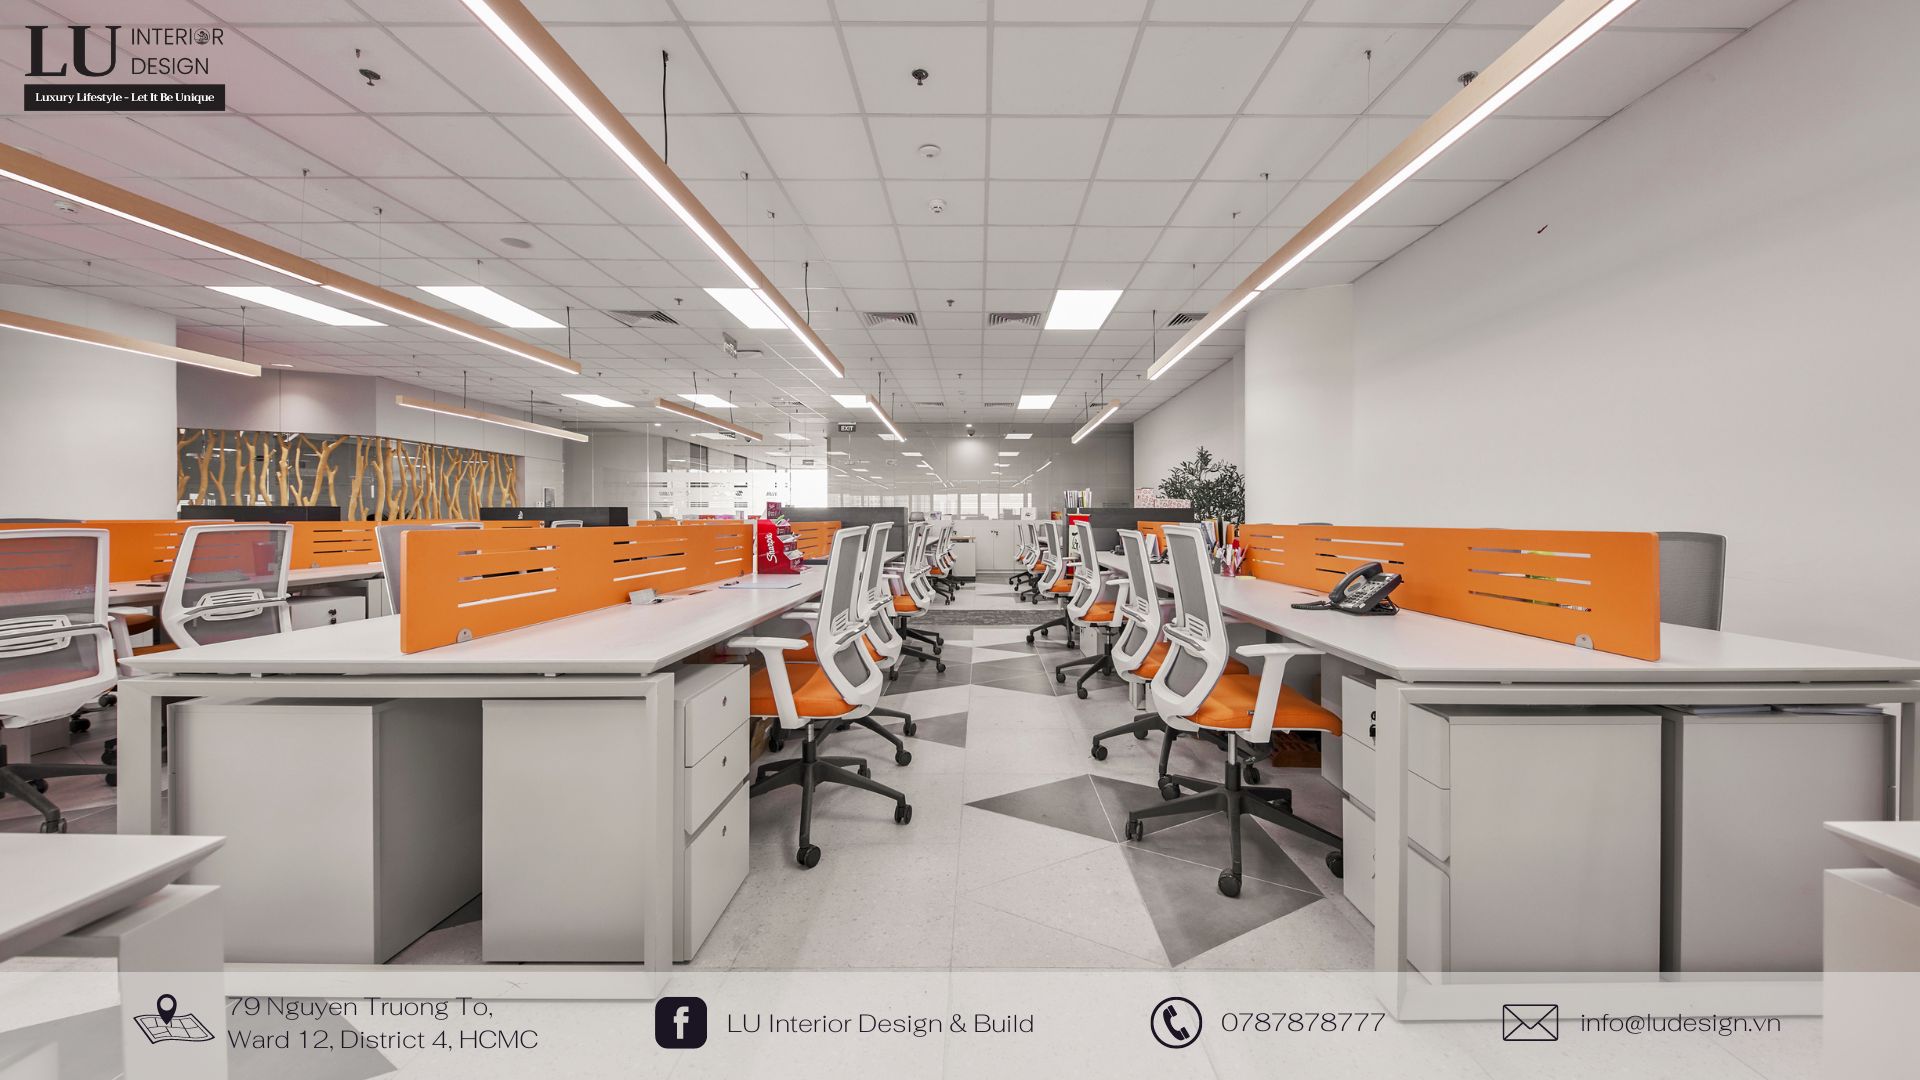 Thiết kế nội thất văn phòng hiện đại và hợp lý giúp tăng năng suất làm việc |Dự án Thiên Long - LU Design thực hiện. 